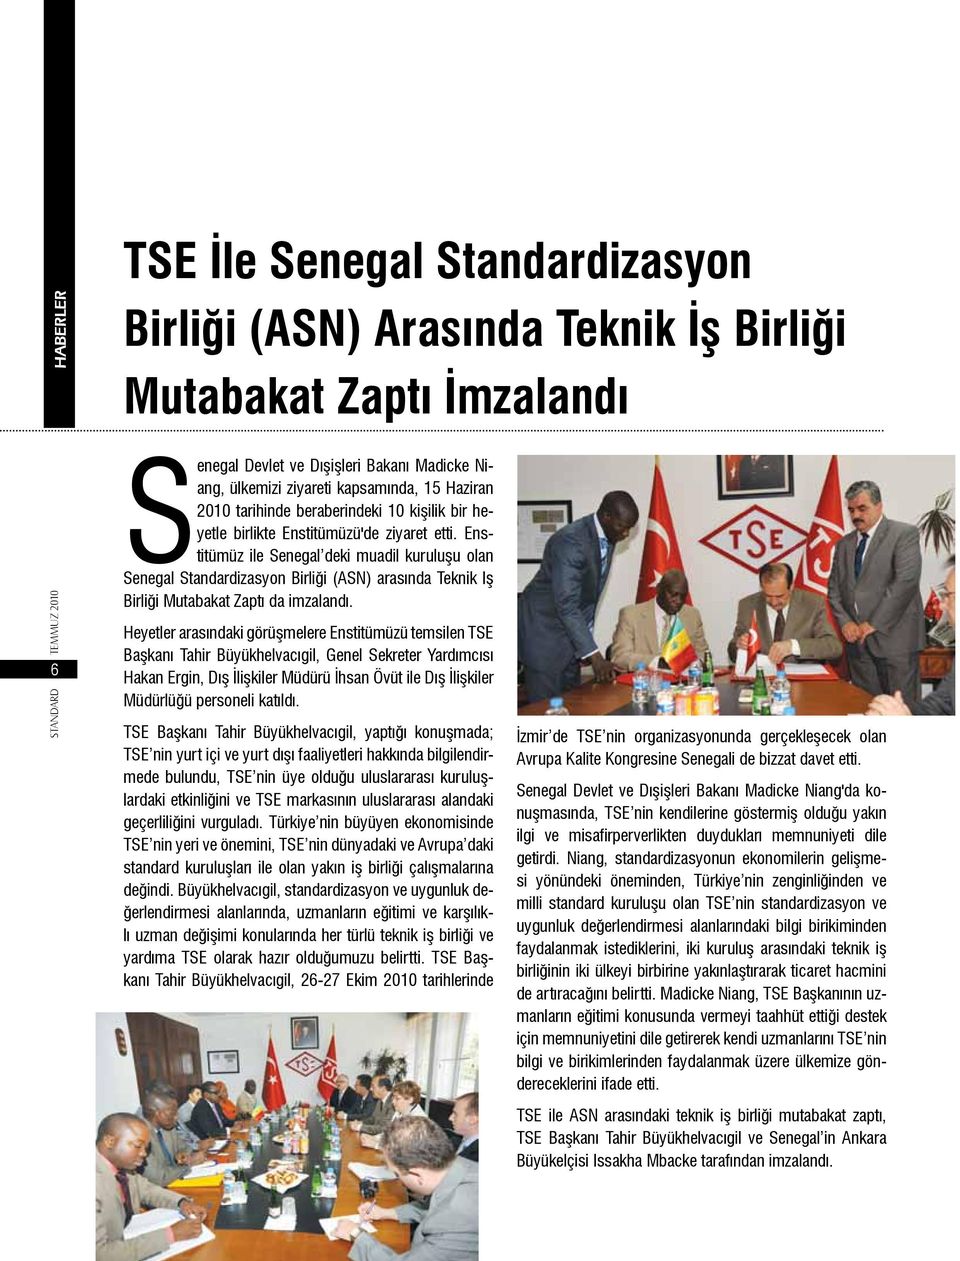 Enstitümüz ile Senegal deki muadil kuruluşu olan Senegal Standardizasyon Birliği (ASN) arasında Teknik Iş Birliği Mutabakat Zaptı da imzalandı.